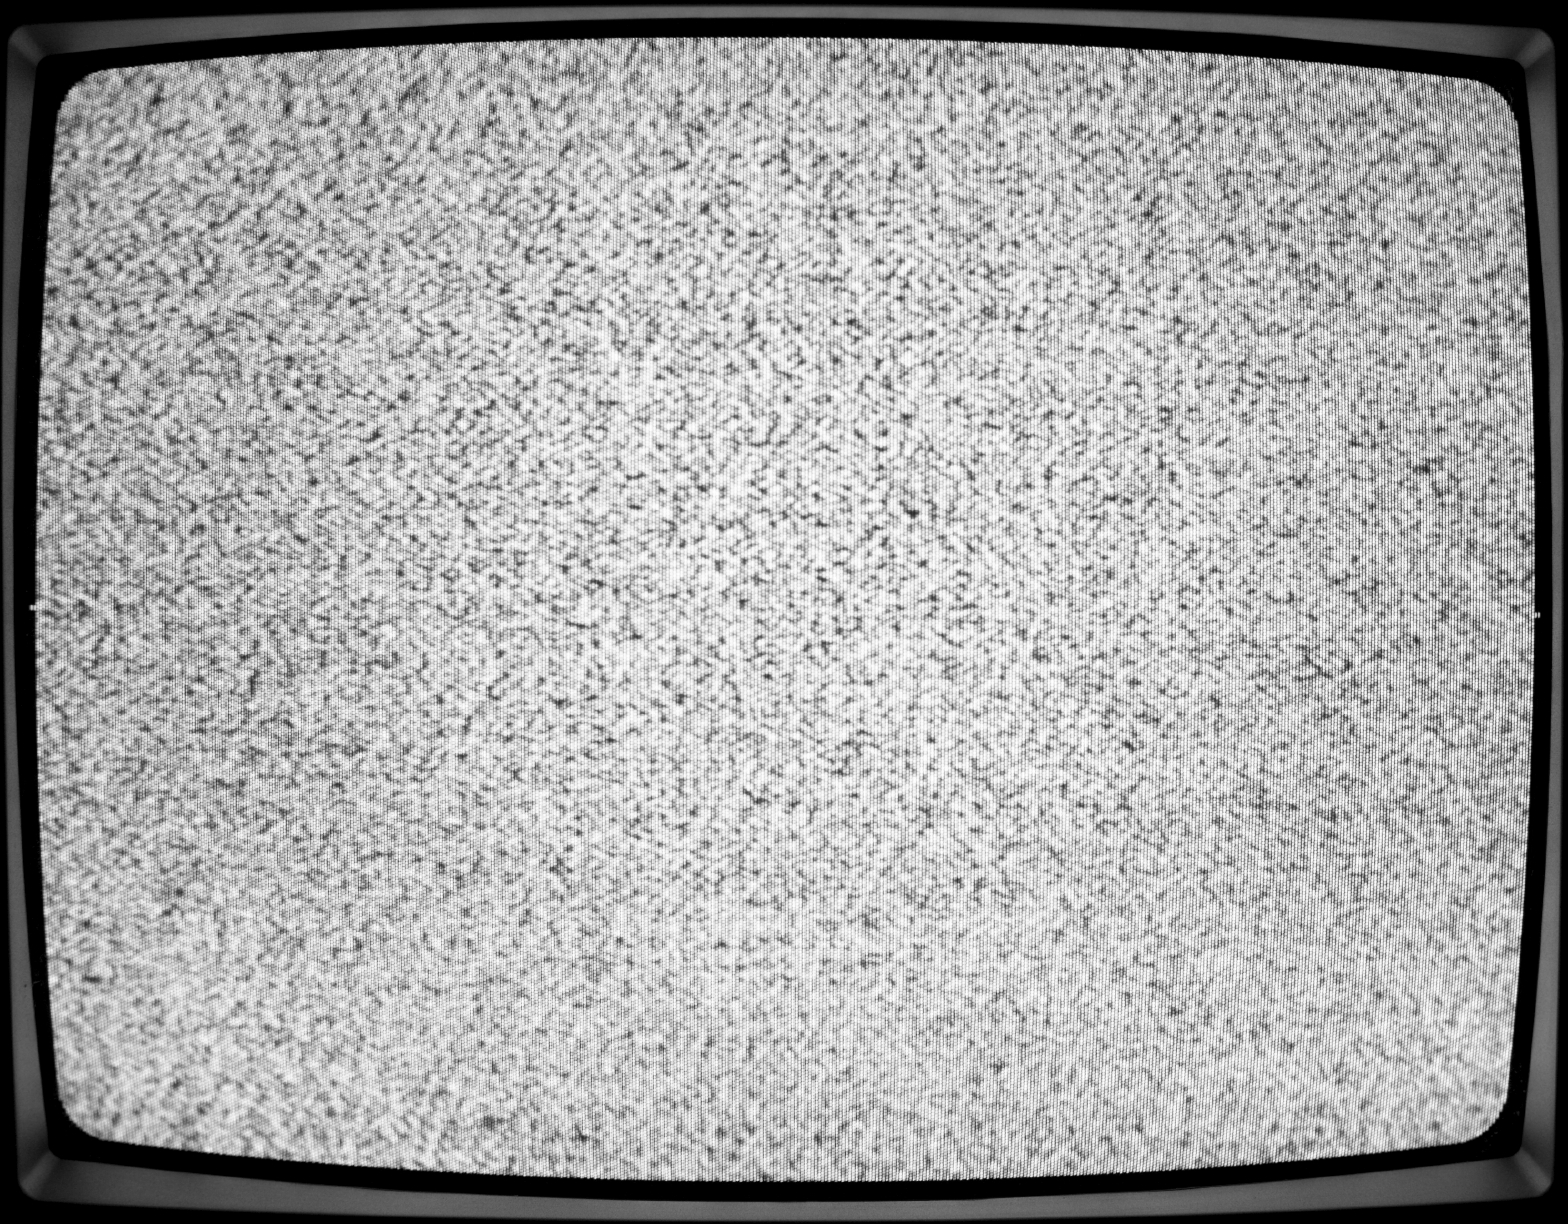 Как нарисовать шум телевизора